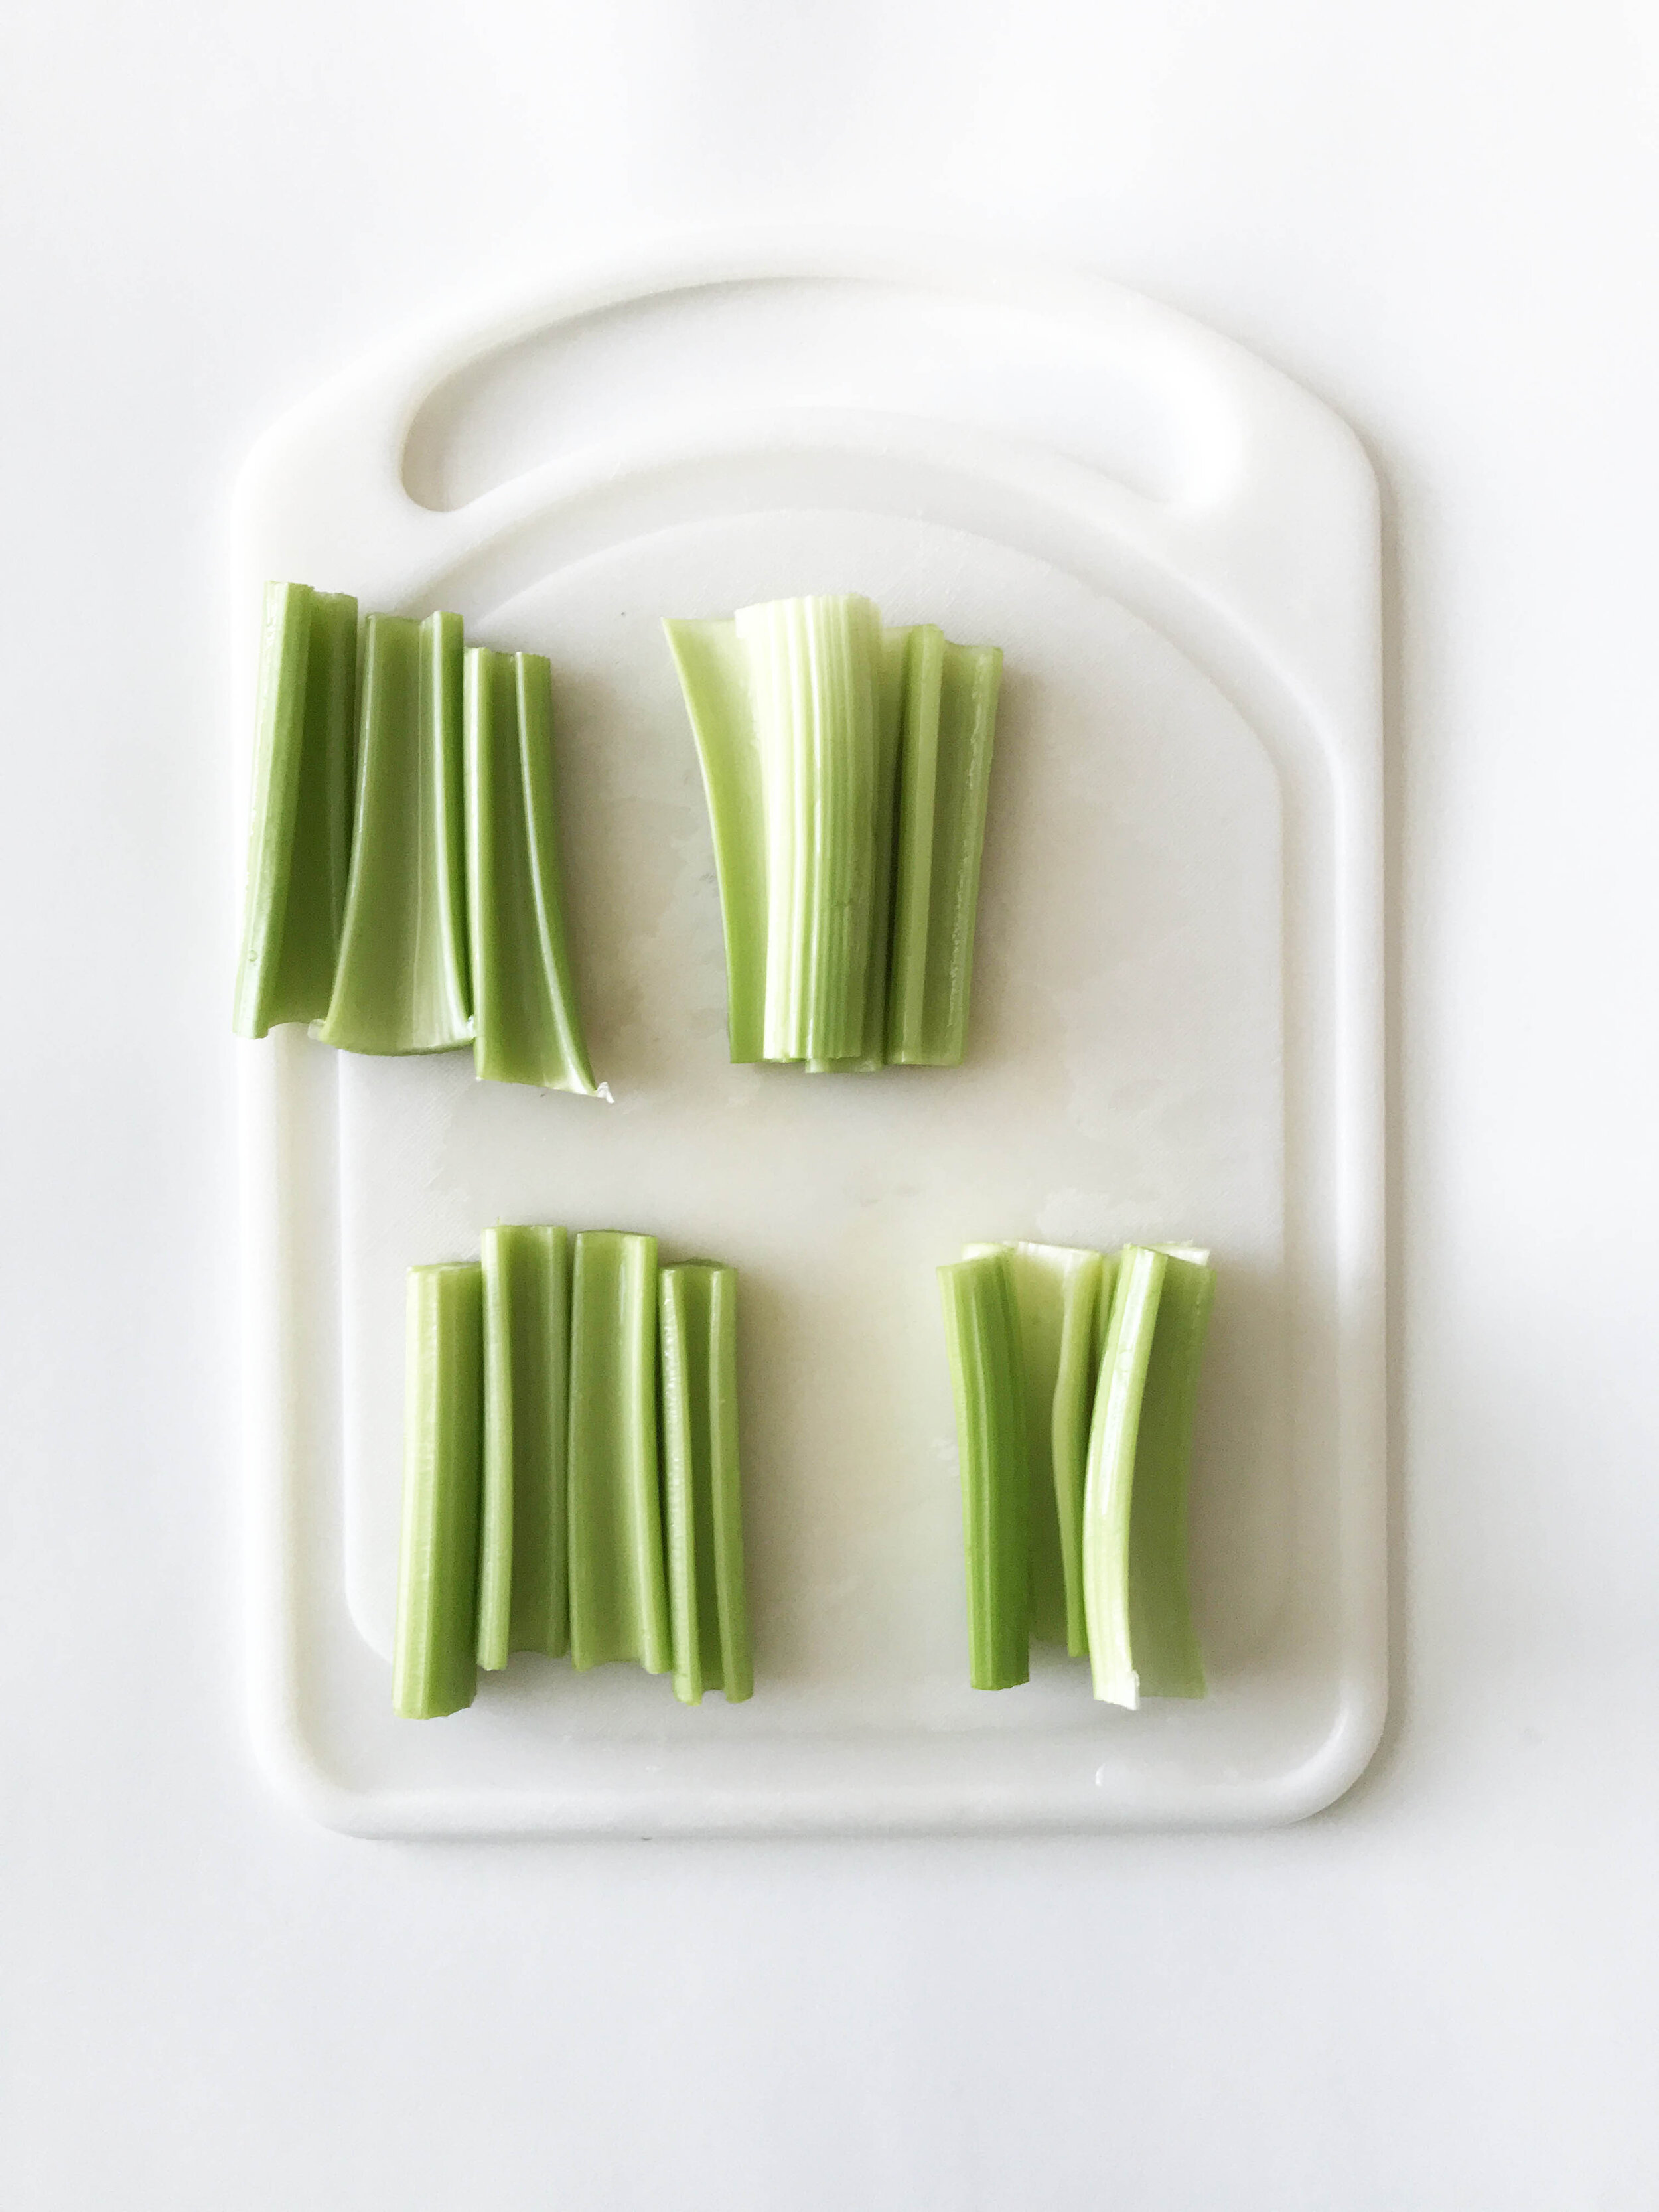 everything-celery-snacks.jpg